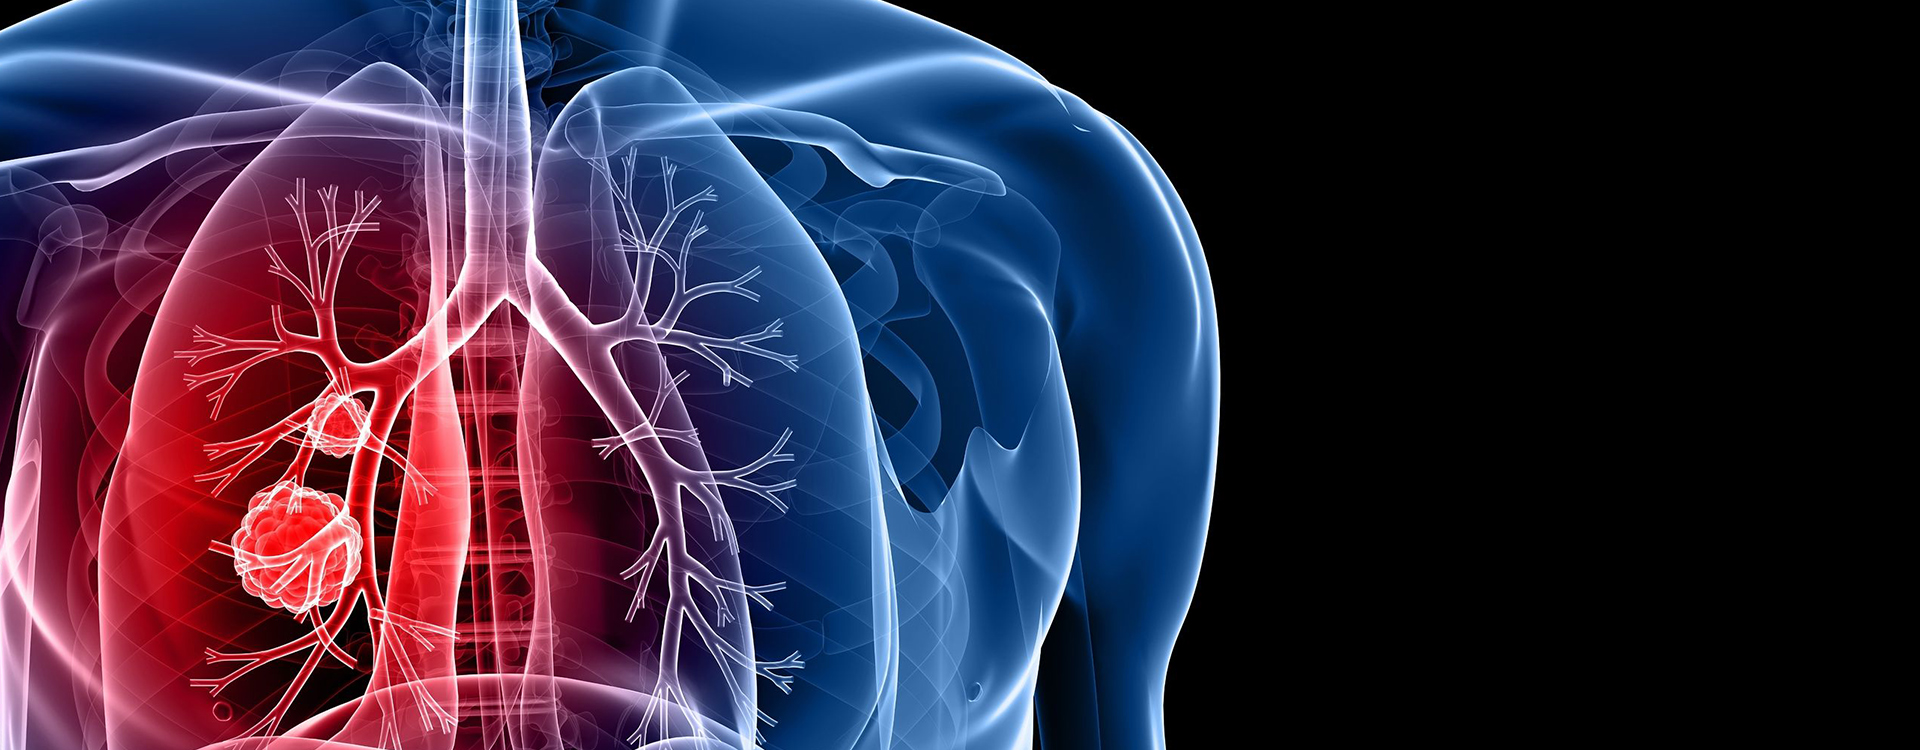 Identificada una nueva diana genética para cáncer de pulmón microcítico...